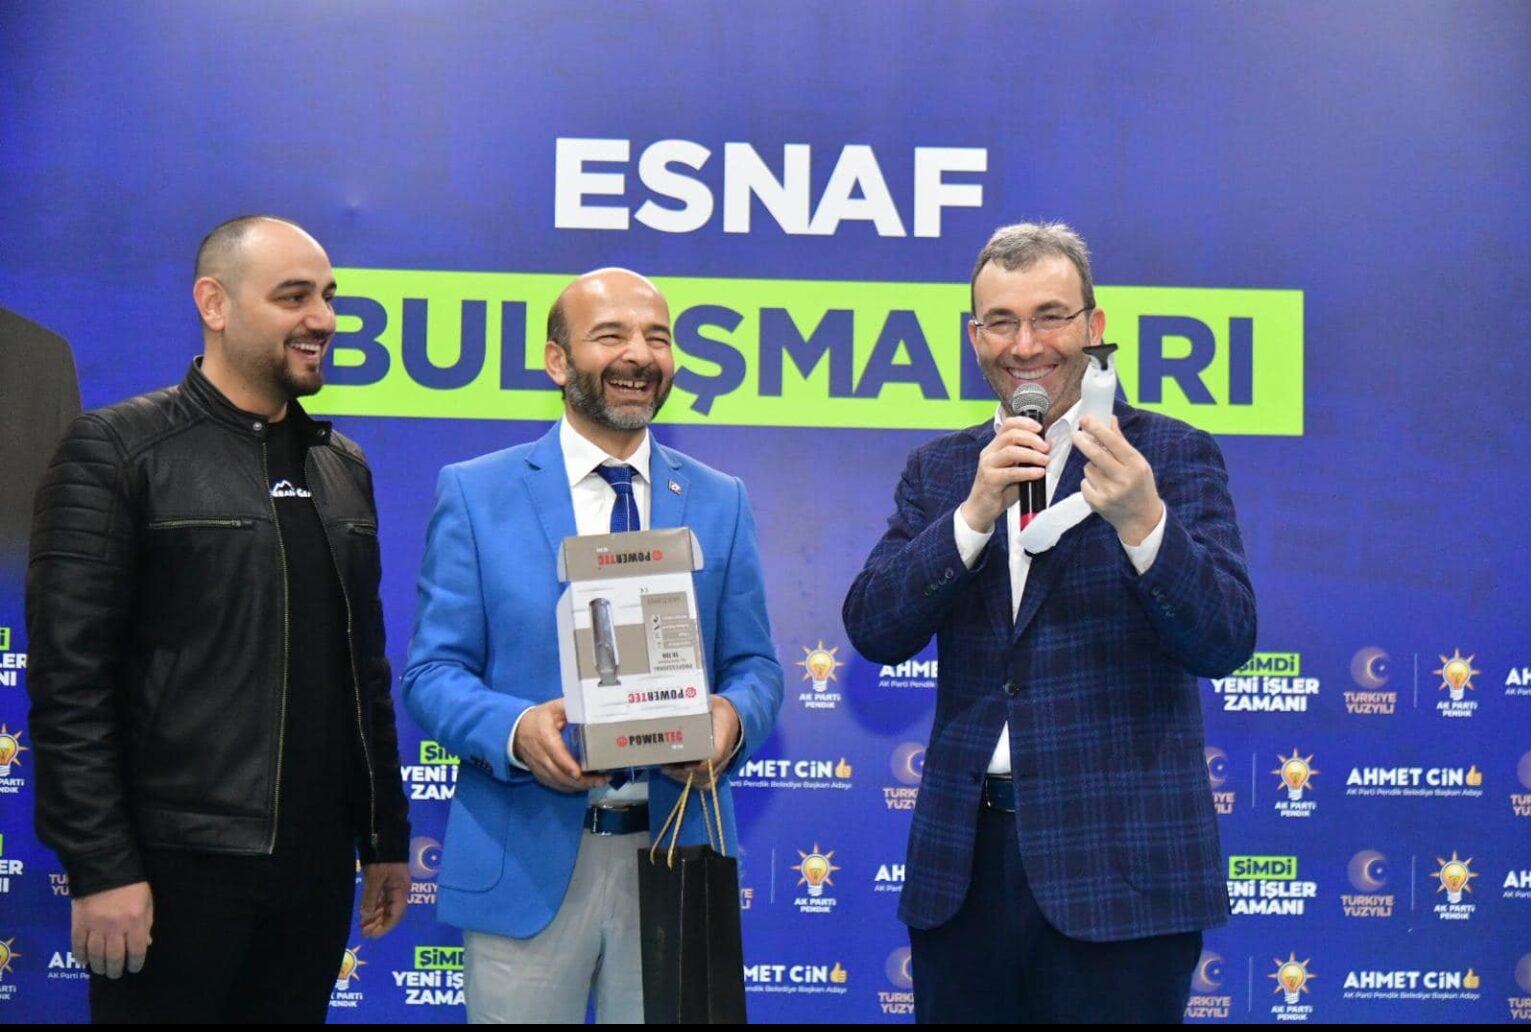 Pendik Belediye Başkanı Ahmet Cin Yeni Nesil Yaşam Merkezinde Kuaför ve Berber Esnaf ile Buluştu